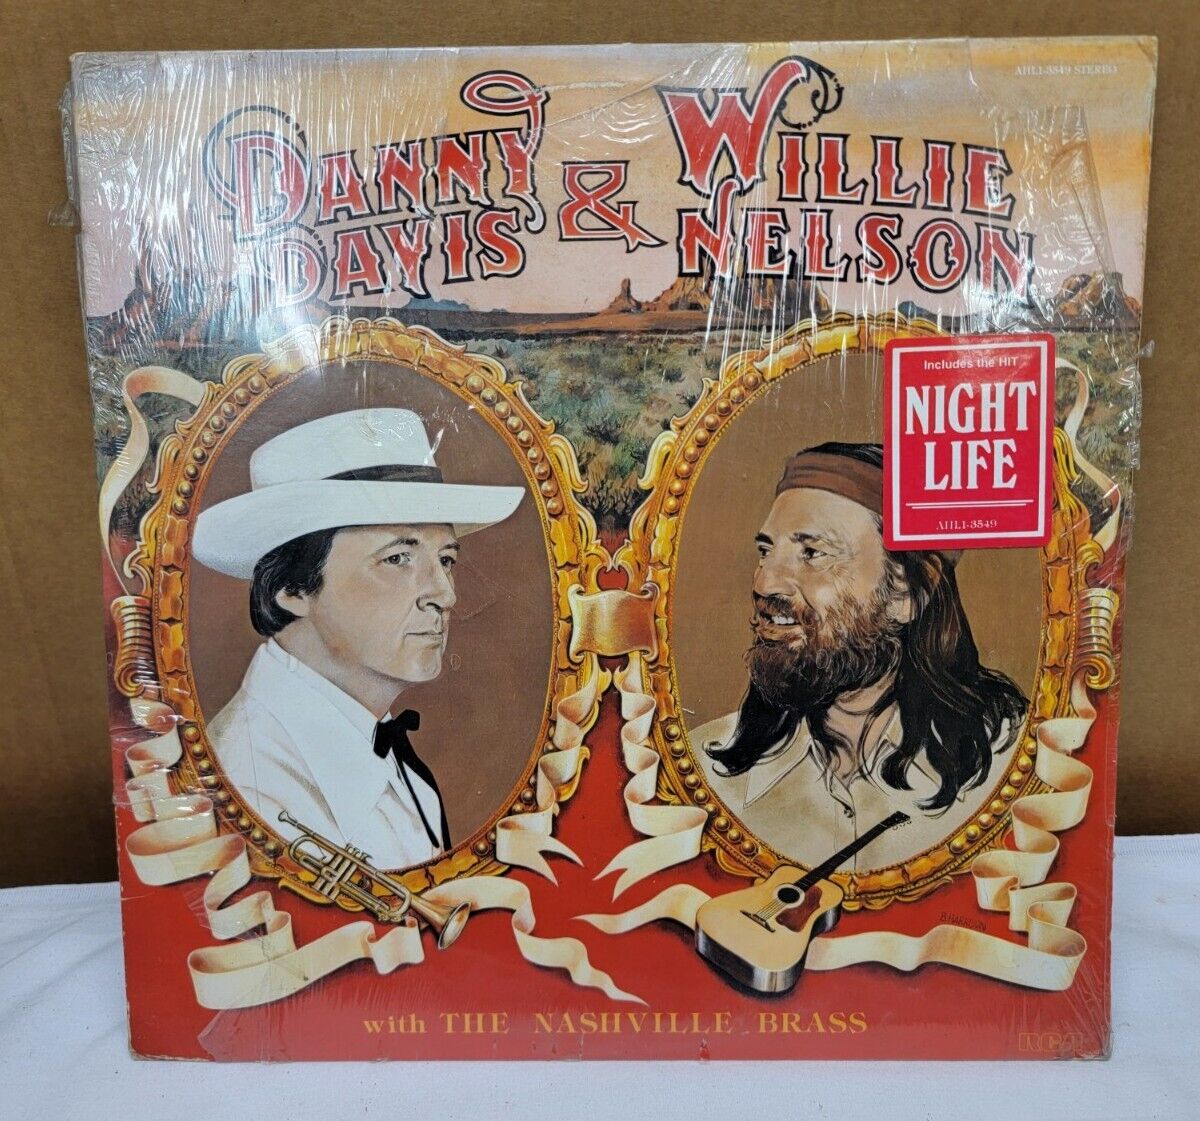 SEALED! Original 1980 Danny Davis & Willie Nelson (Nashville Brass) LP - RCA